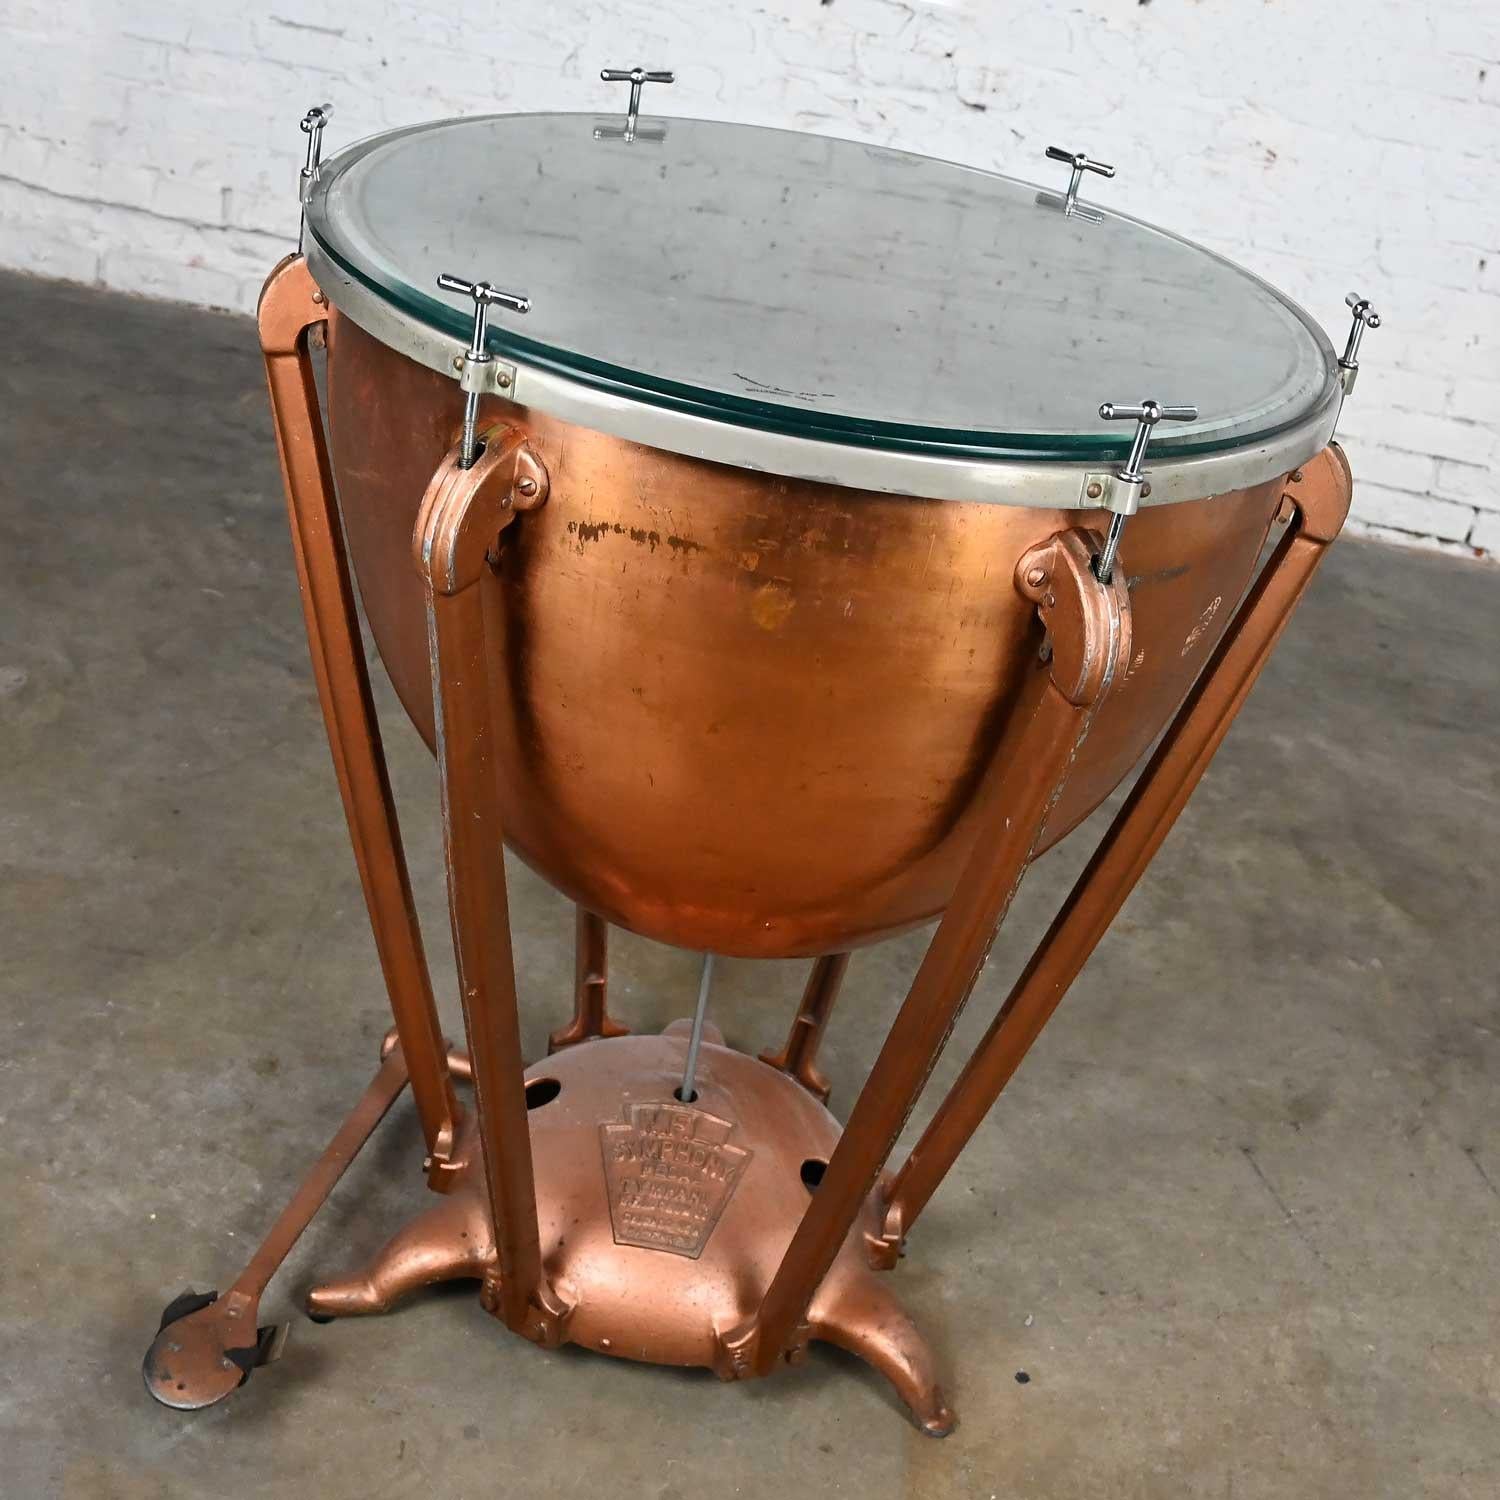 Superbe table centrale vintage steampunk industrielle ou rustique en cuivre pour tambour de bouilloire par I.F.L.A. Drum Company. Composée de bras et d'une base en aluminium peints en cuivre, d'une bouilloire en cuivre, d'un plateau en peau de